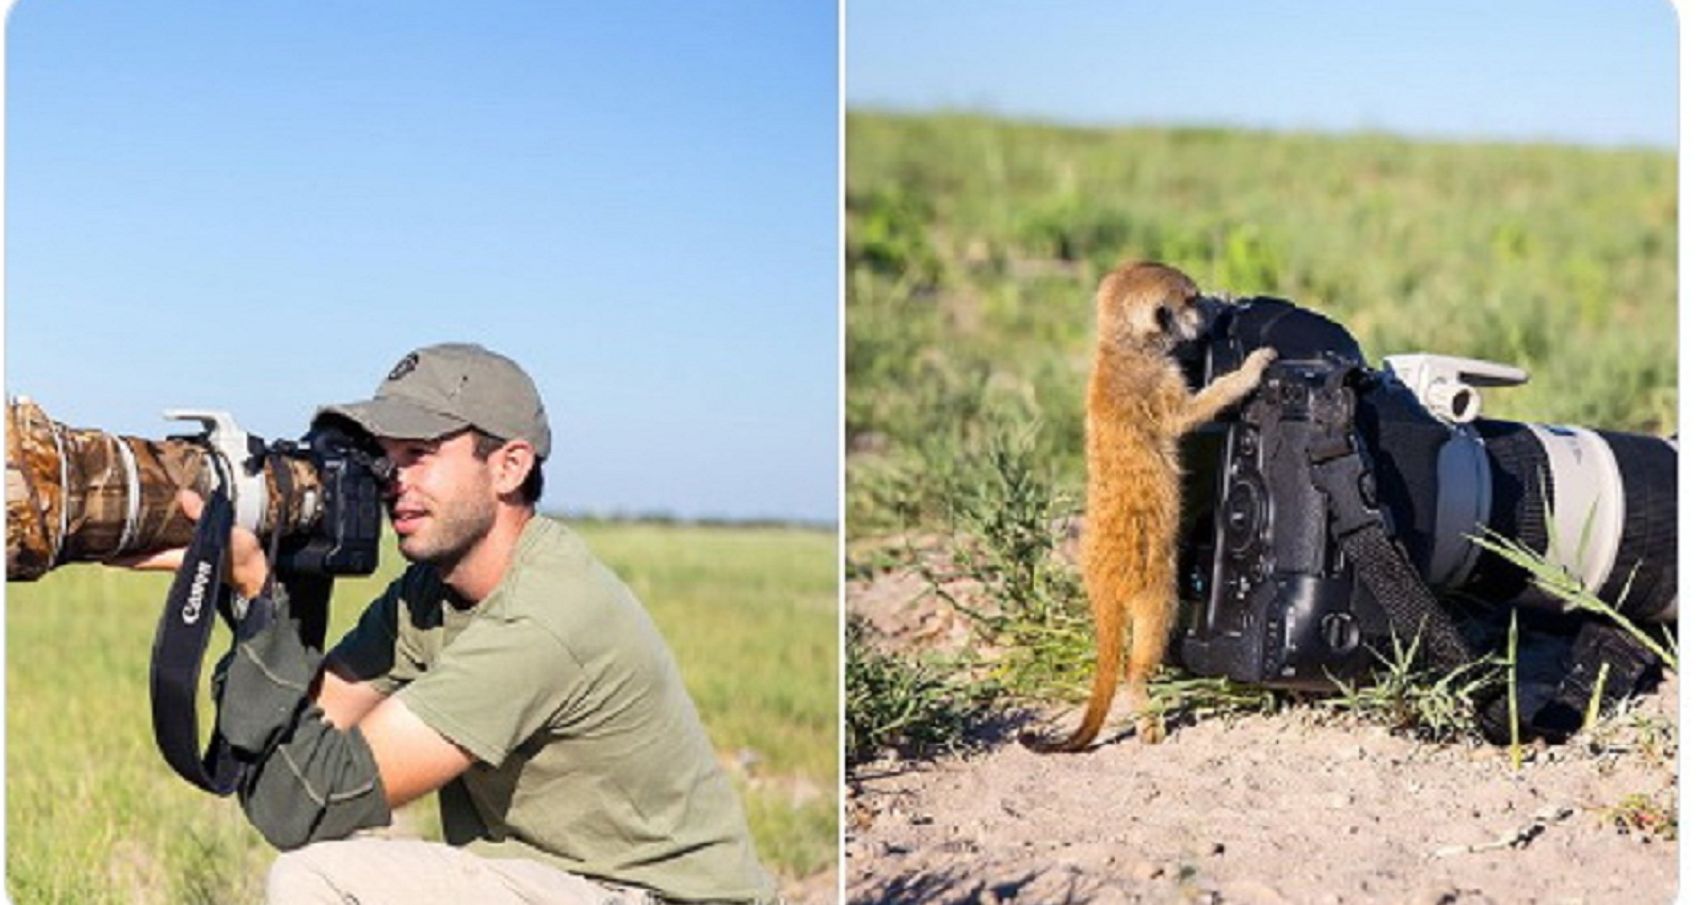  Fotografer Inggris Will Burrard Lucas, terlihat dekat dengan meerkat.